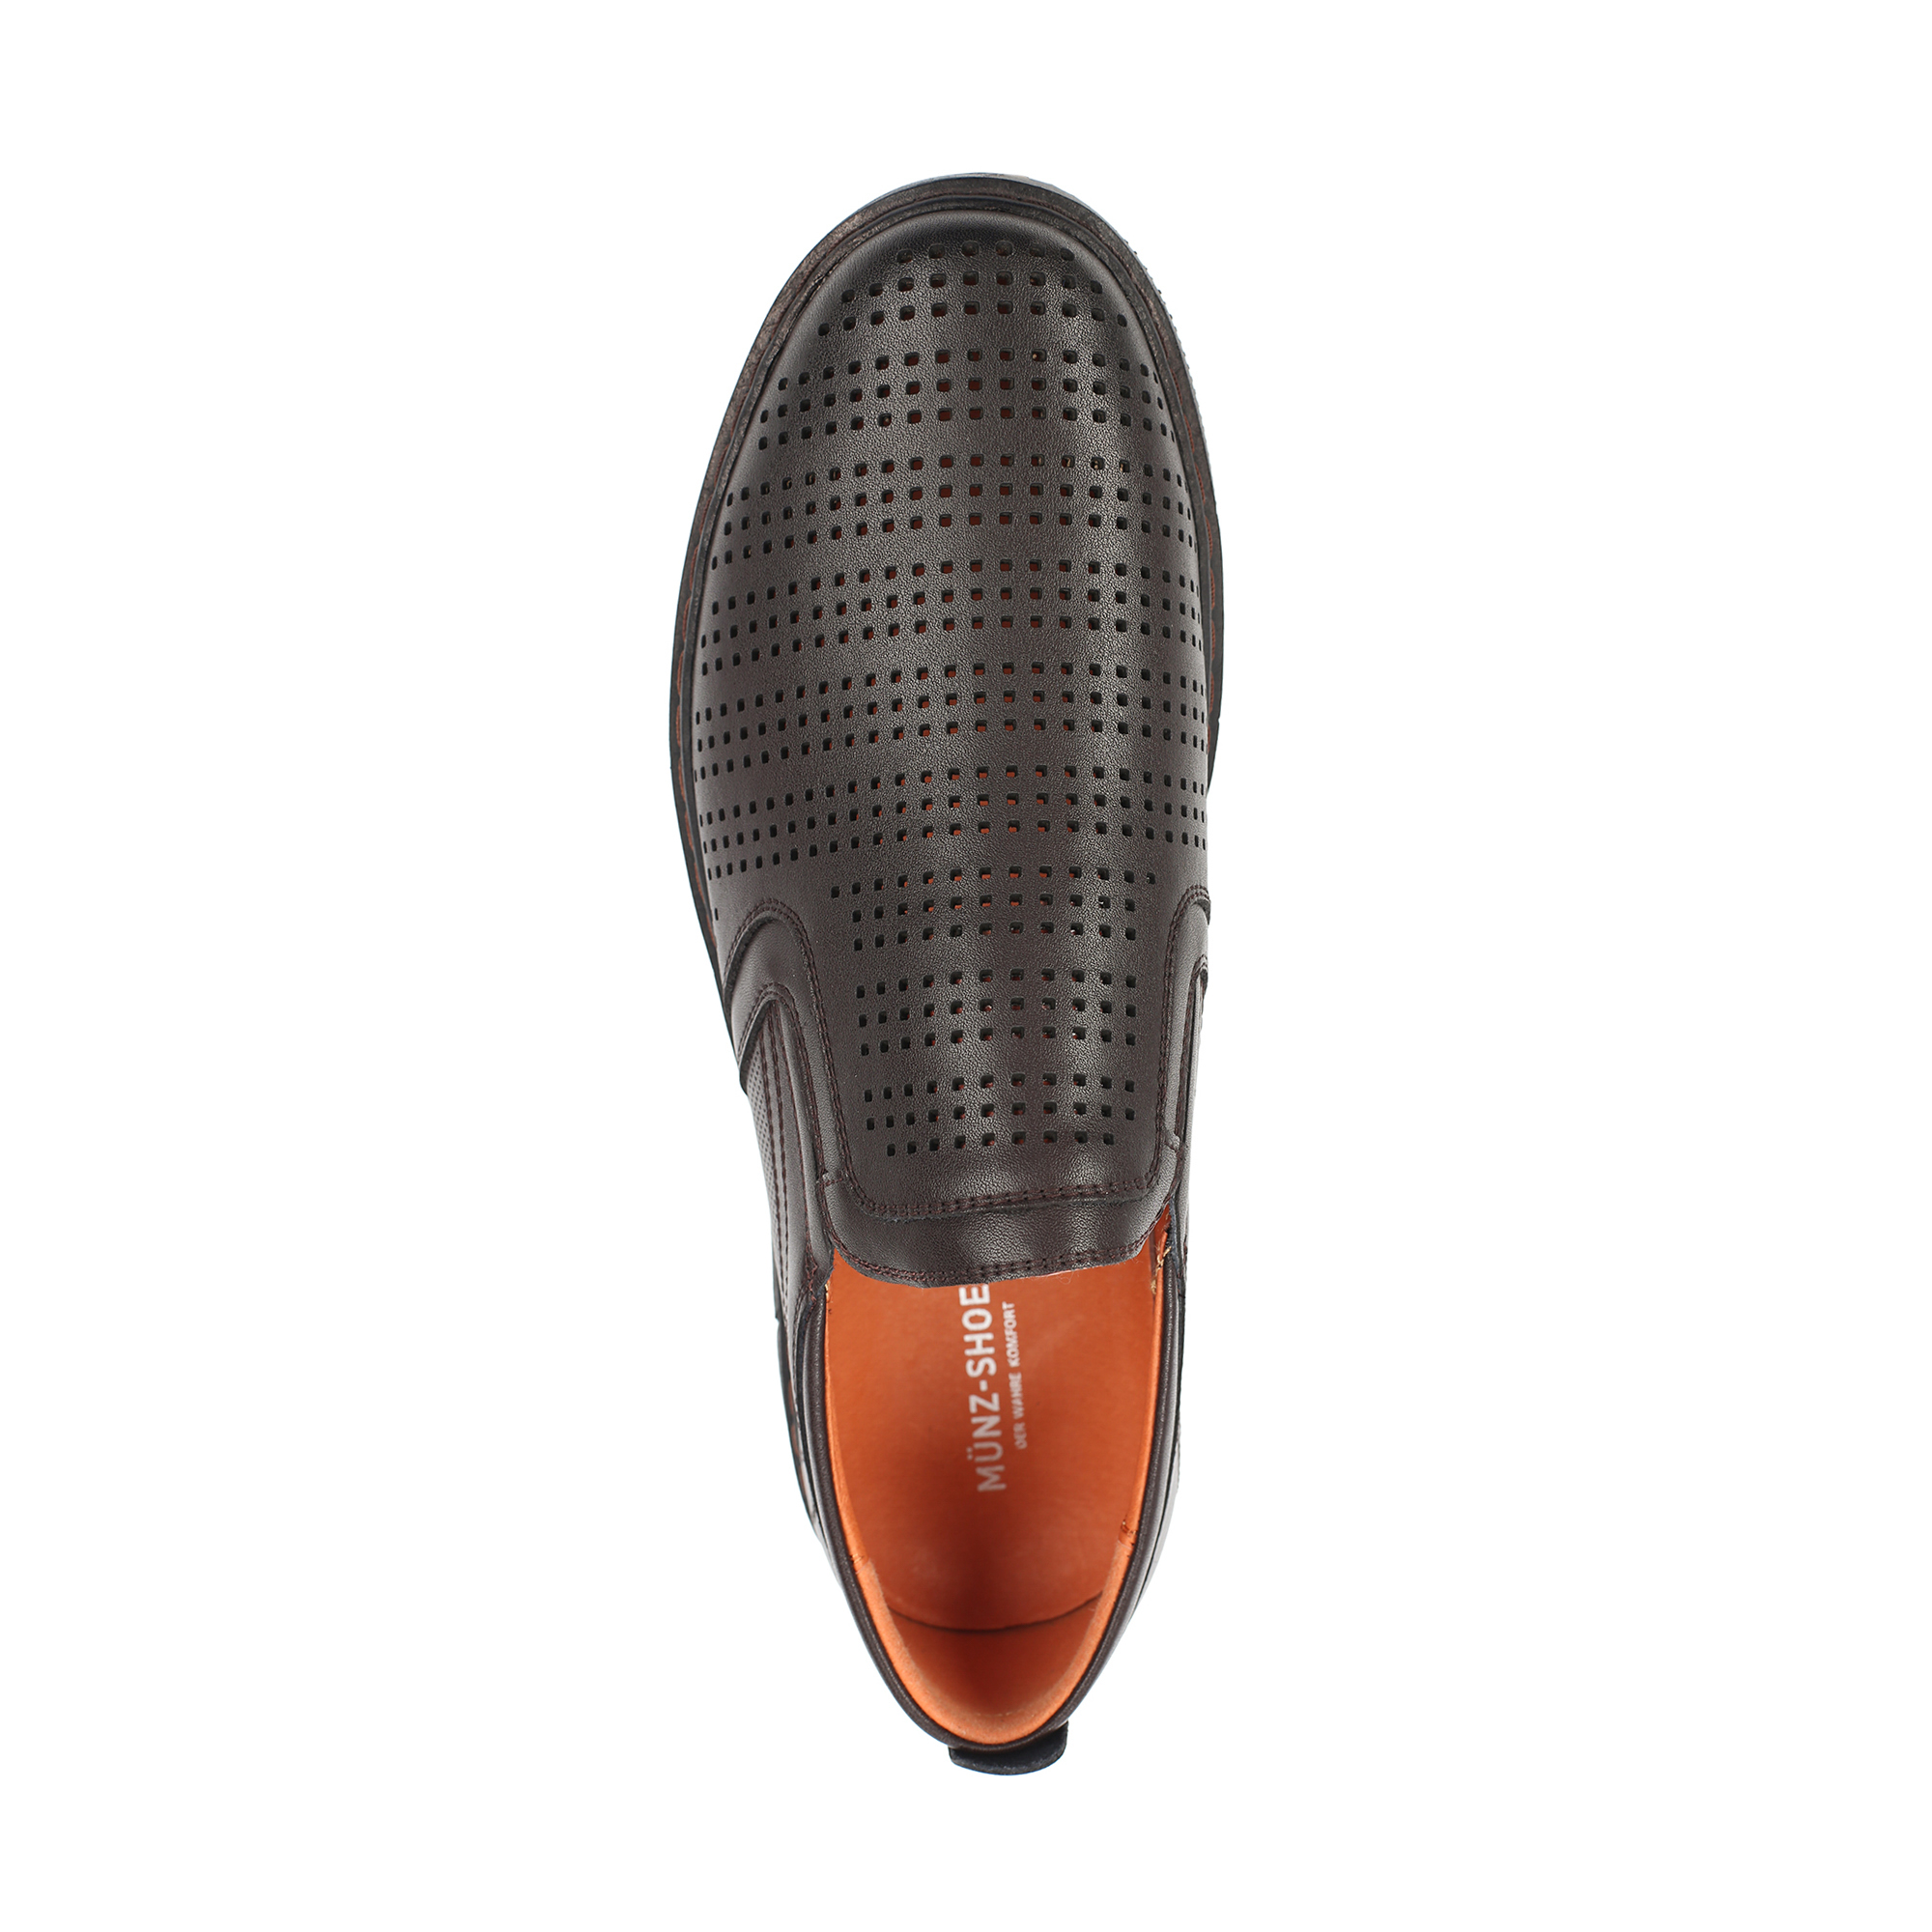 Туфли/полуботинки MUNZ Shoes 104-612A-1609, цвет темно-коричневый, размер 40 - фото 5